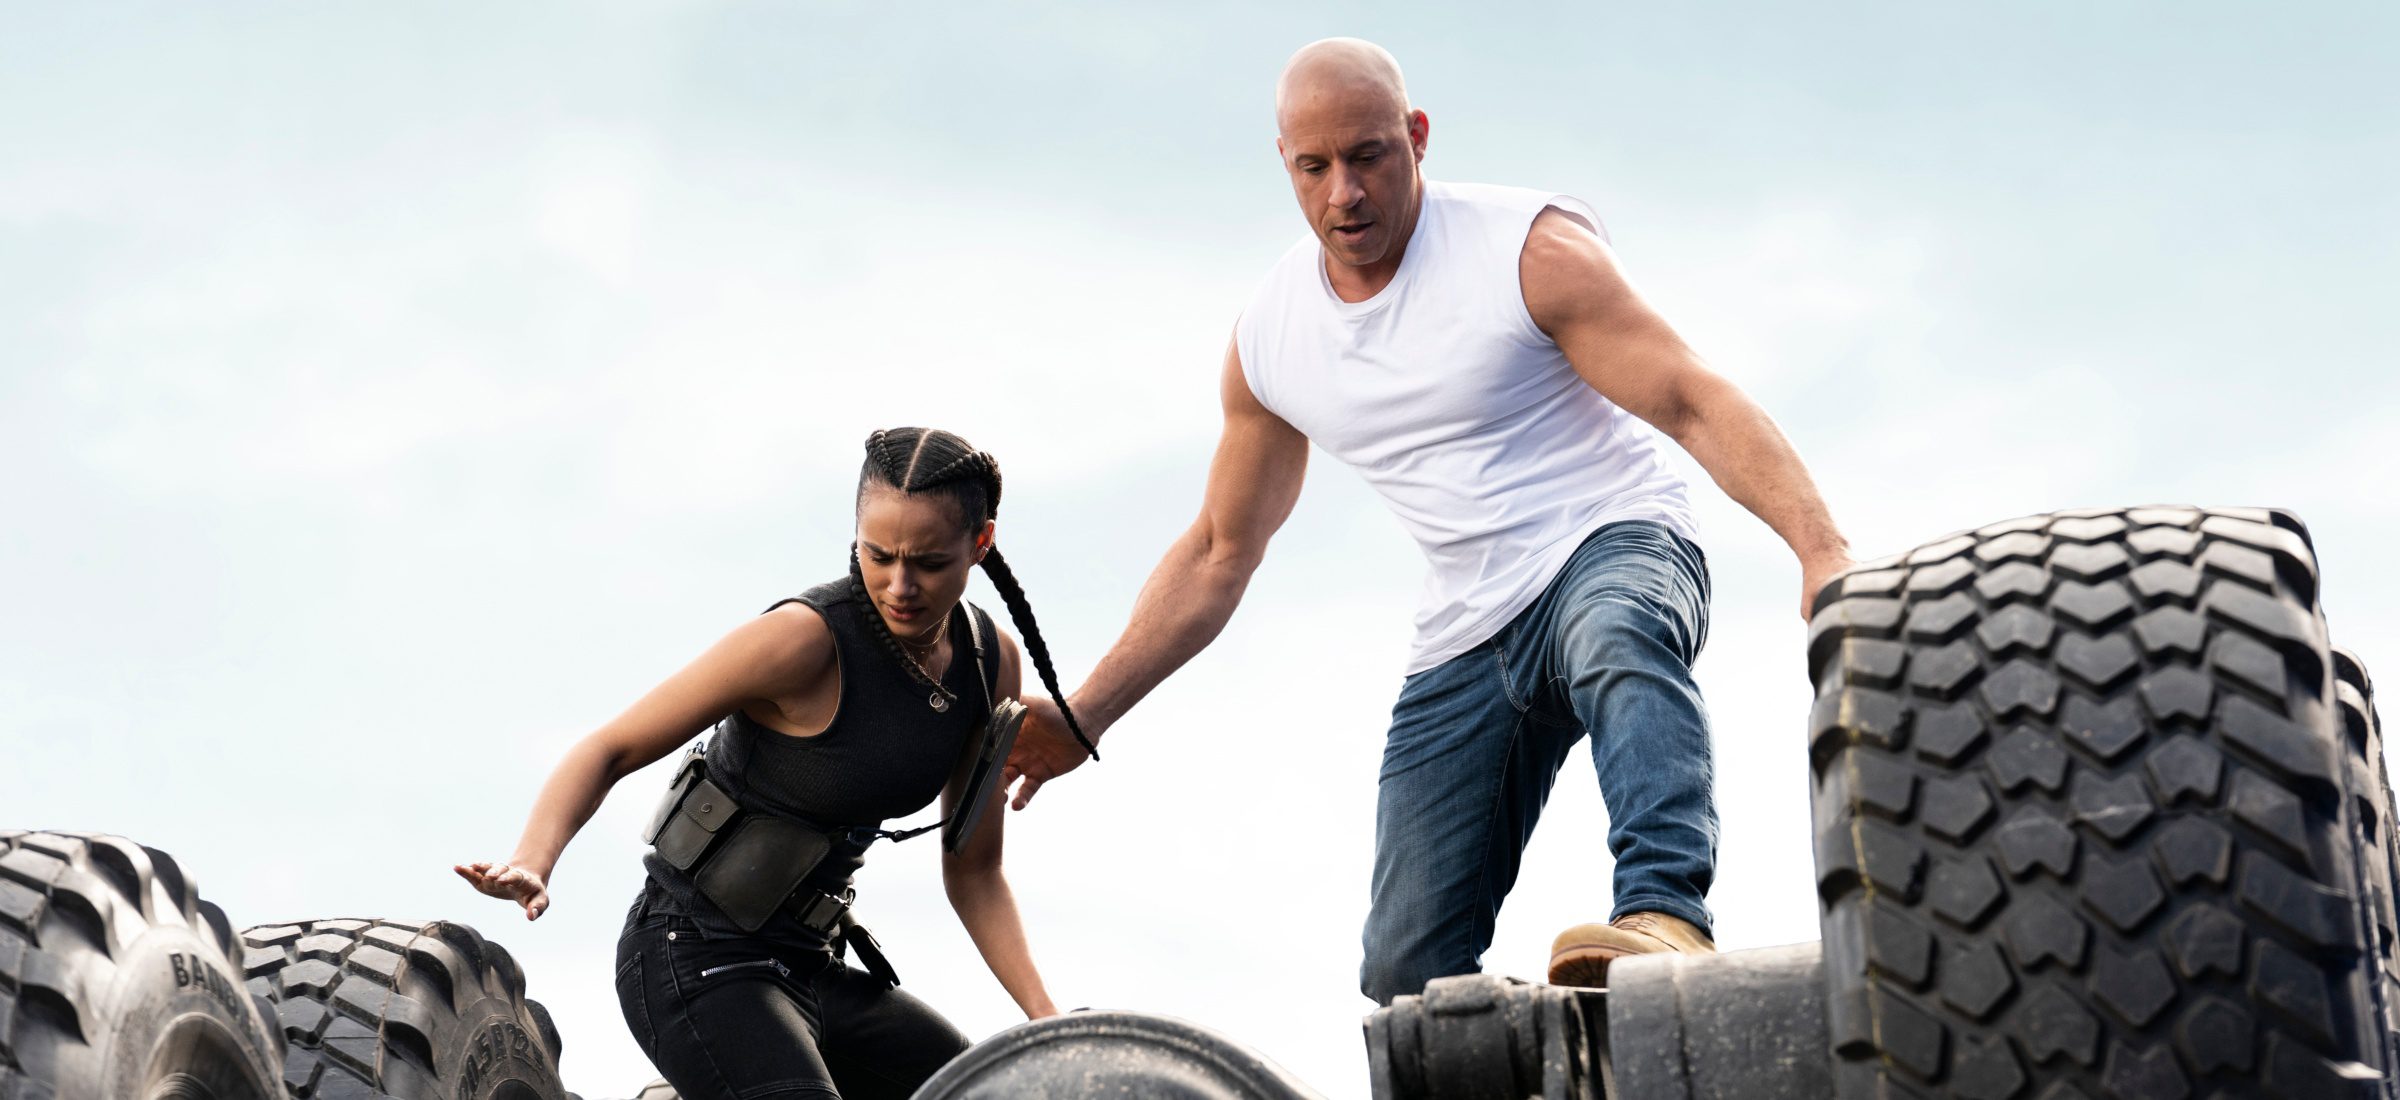 Familiensiedlungen, Kämpfe und Autoakrobatik im neuen Trailer zu "Fast and Furious 9" 101